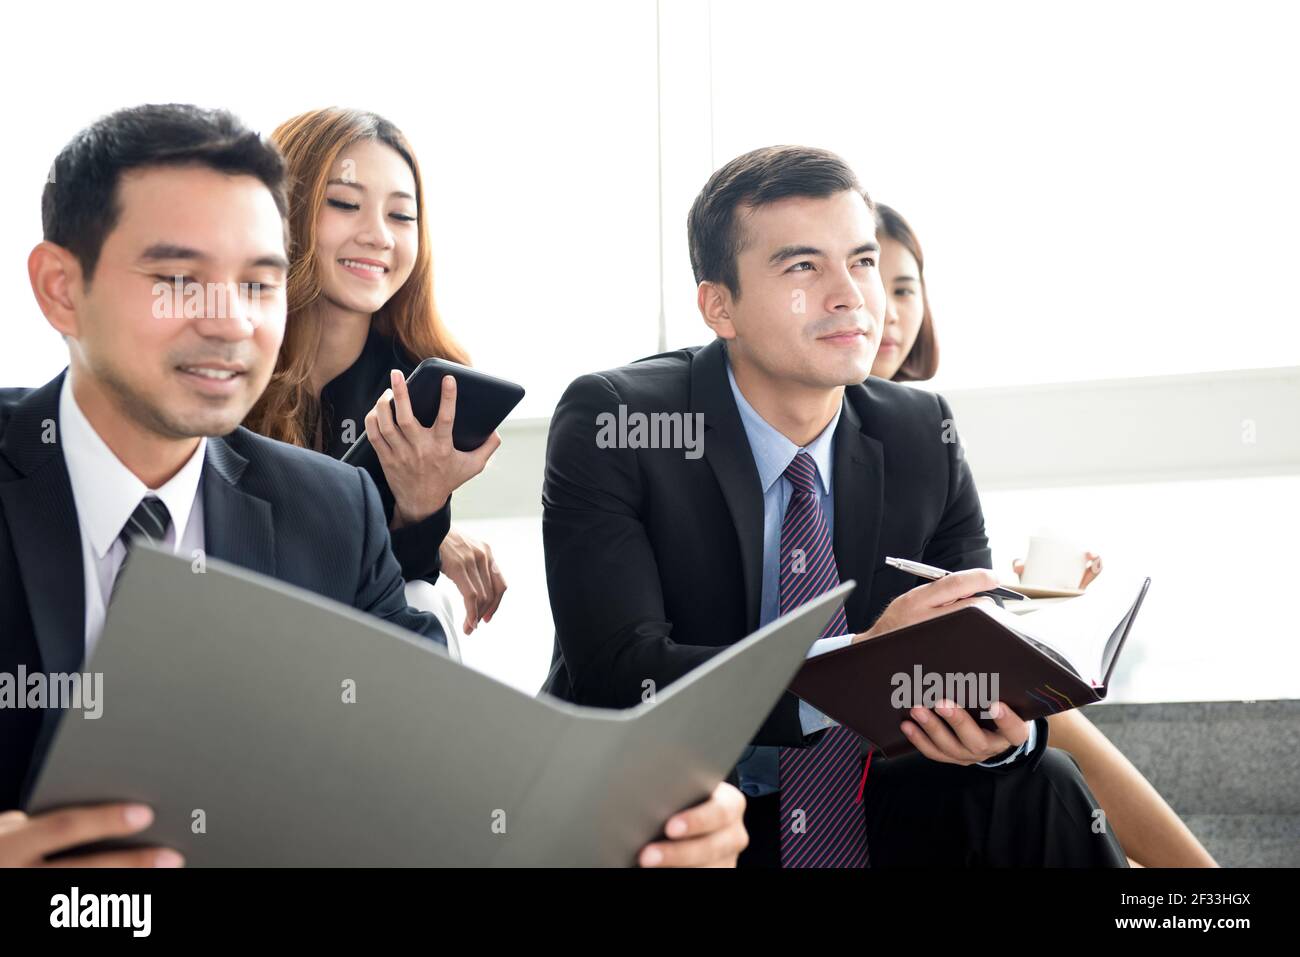 Les gens d'affaires se classent en groupe en tant que publics dans la classe de formation Banque D'Images